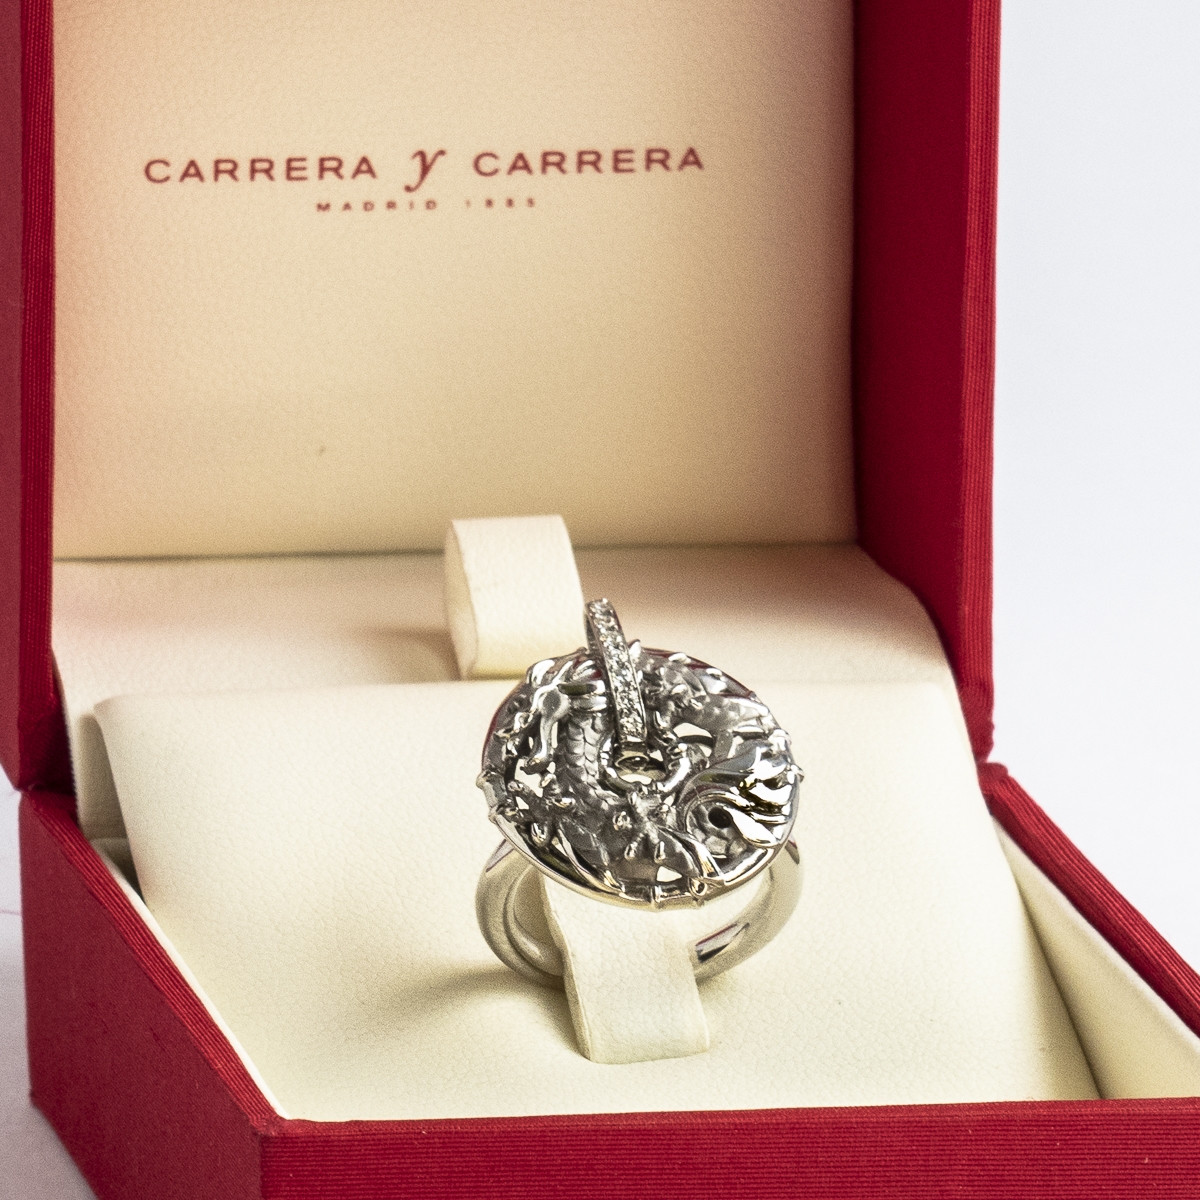 Carrera y Carrera anillo Shanghai de oro blanco diamantes.